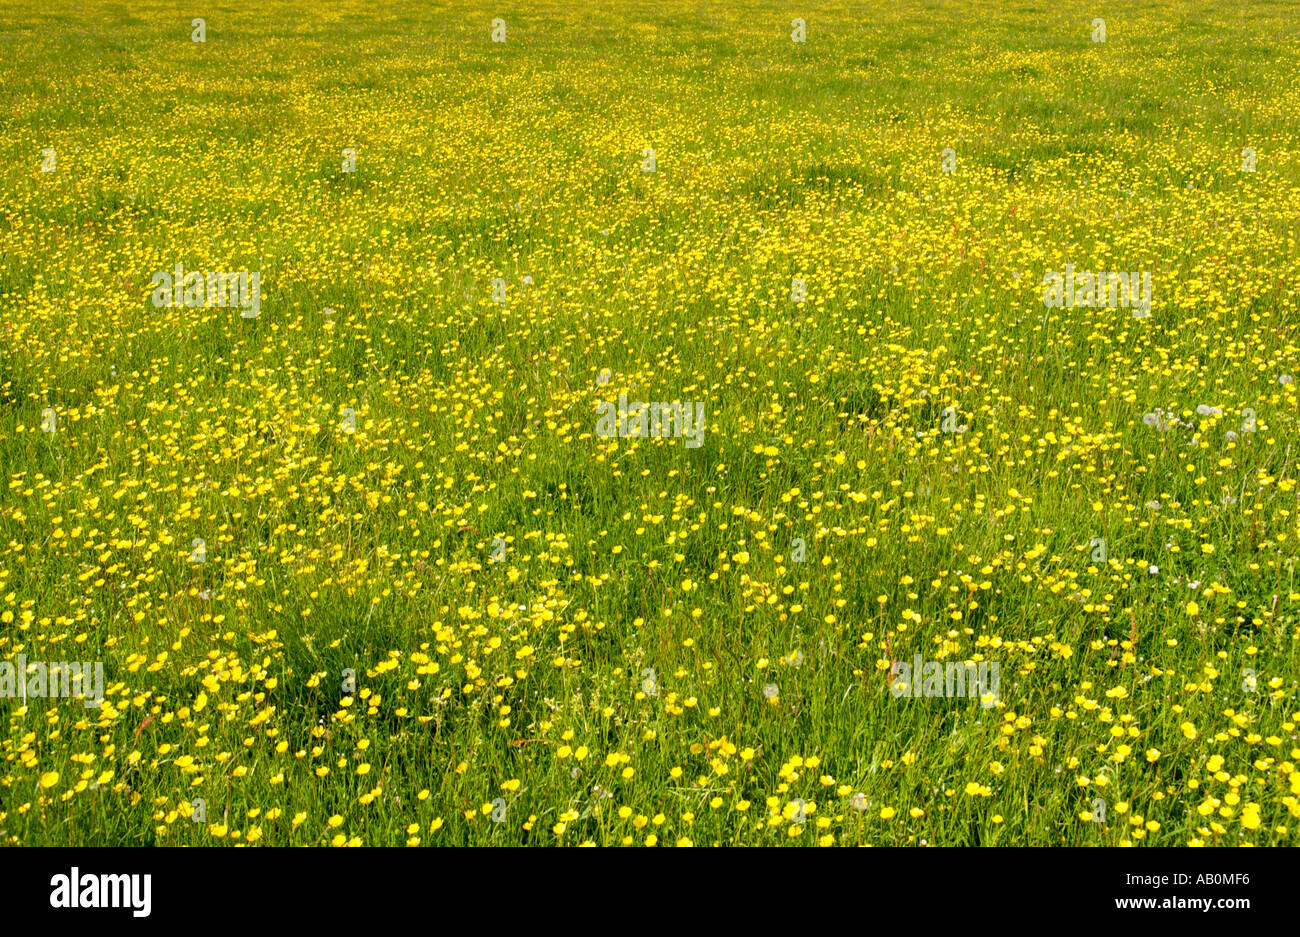 Vue sur les terres agricoles à renoncules jaunes au soleil d'été près de Hay on Wye Powys Pays de Galles UK Banque D'Images